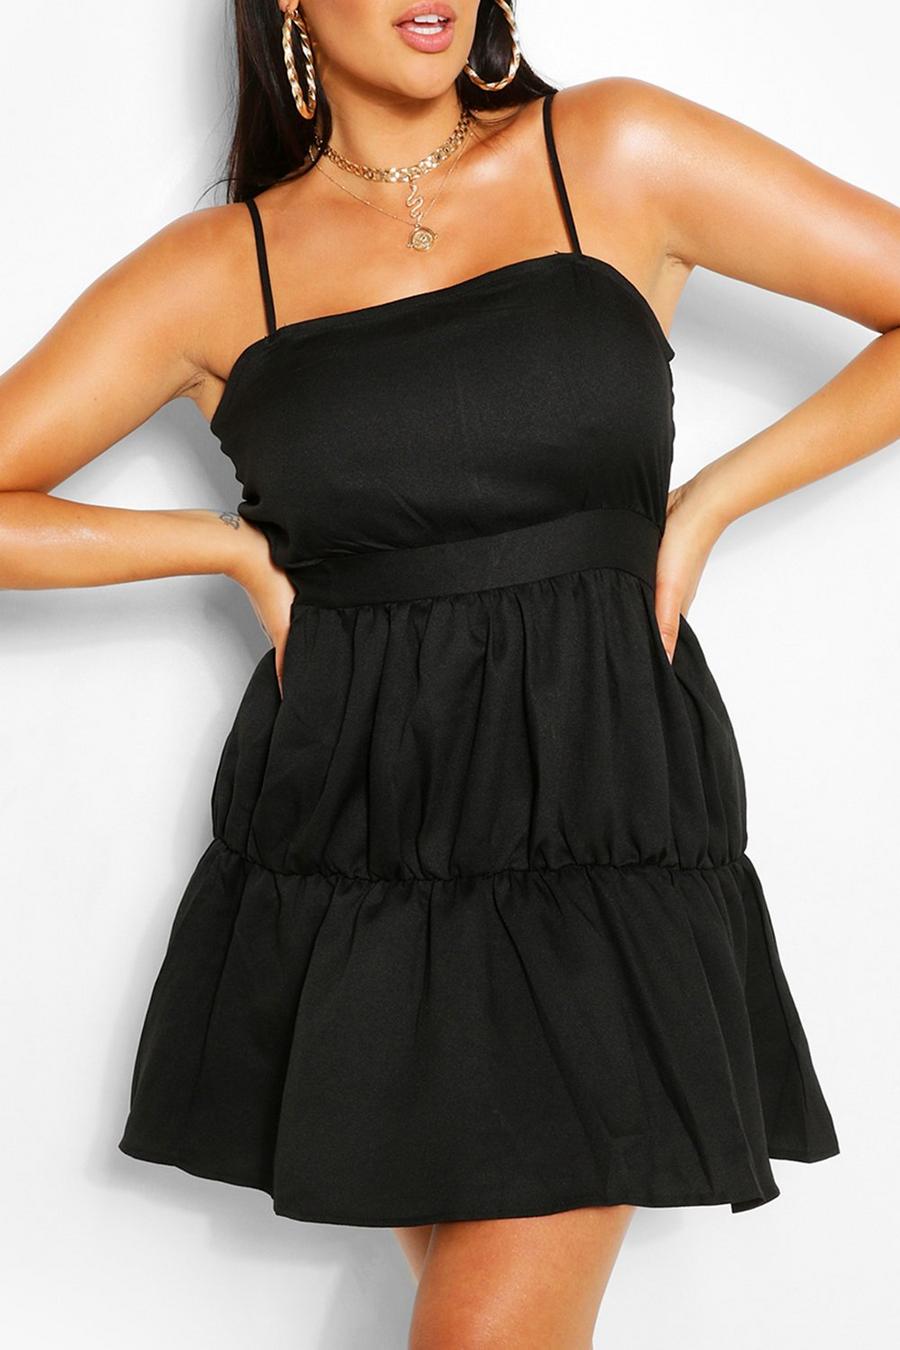 שחור black שמלת קיץ מדורגת עם כתפיות מידות גדולות